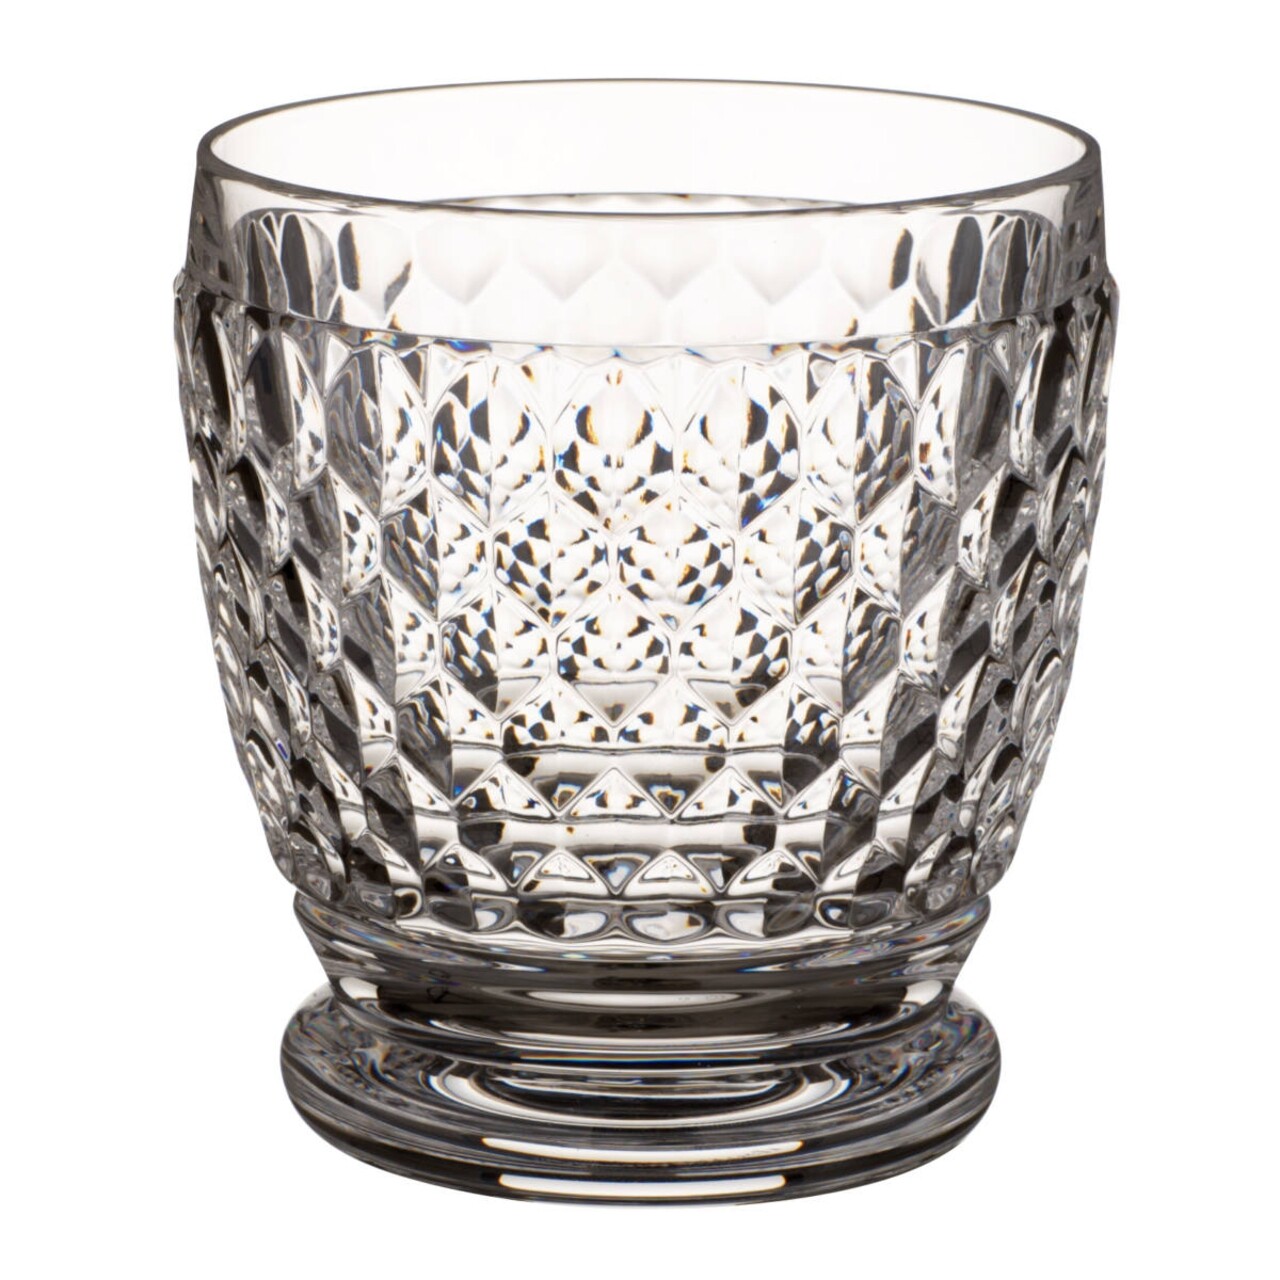 4 db Whiskey pohár, Villeroy & Boch, Boston, 330 ml, kristály üveg, áttetsző